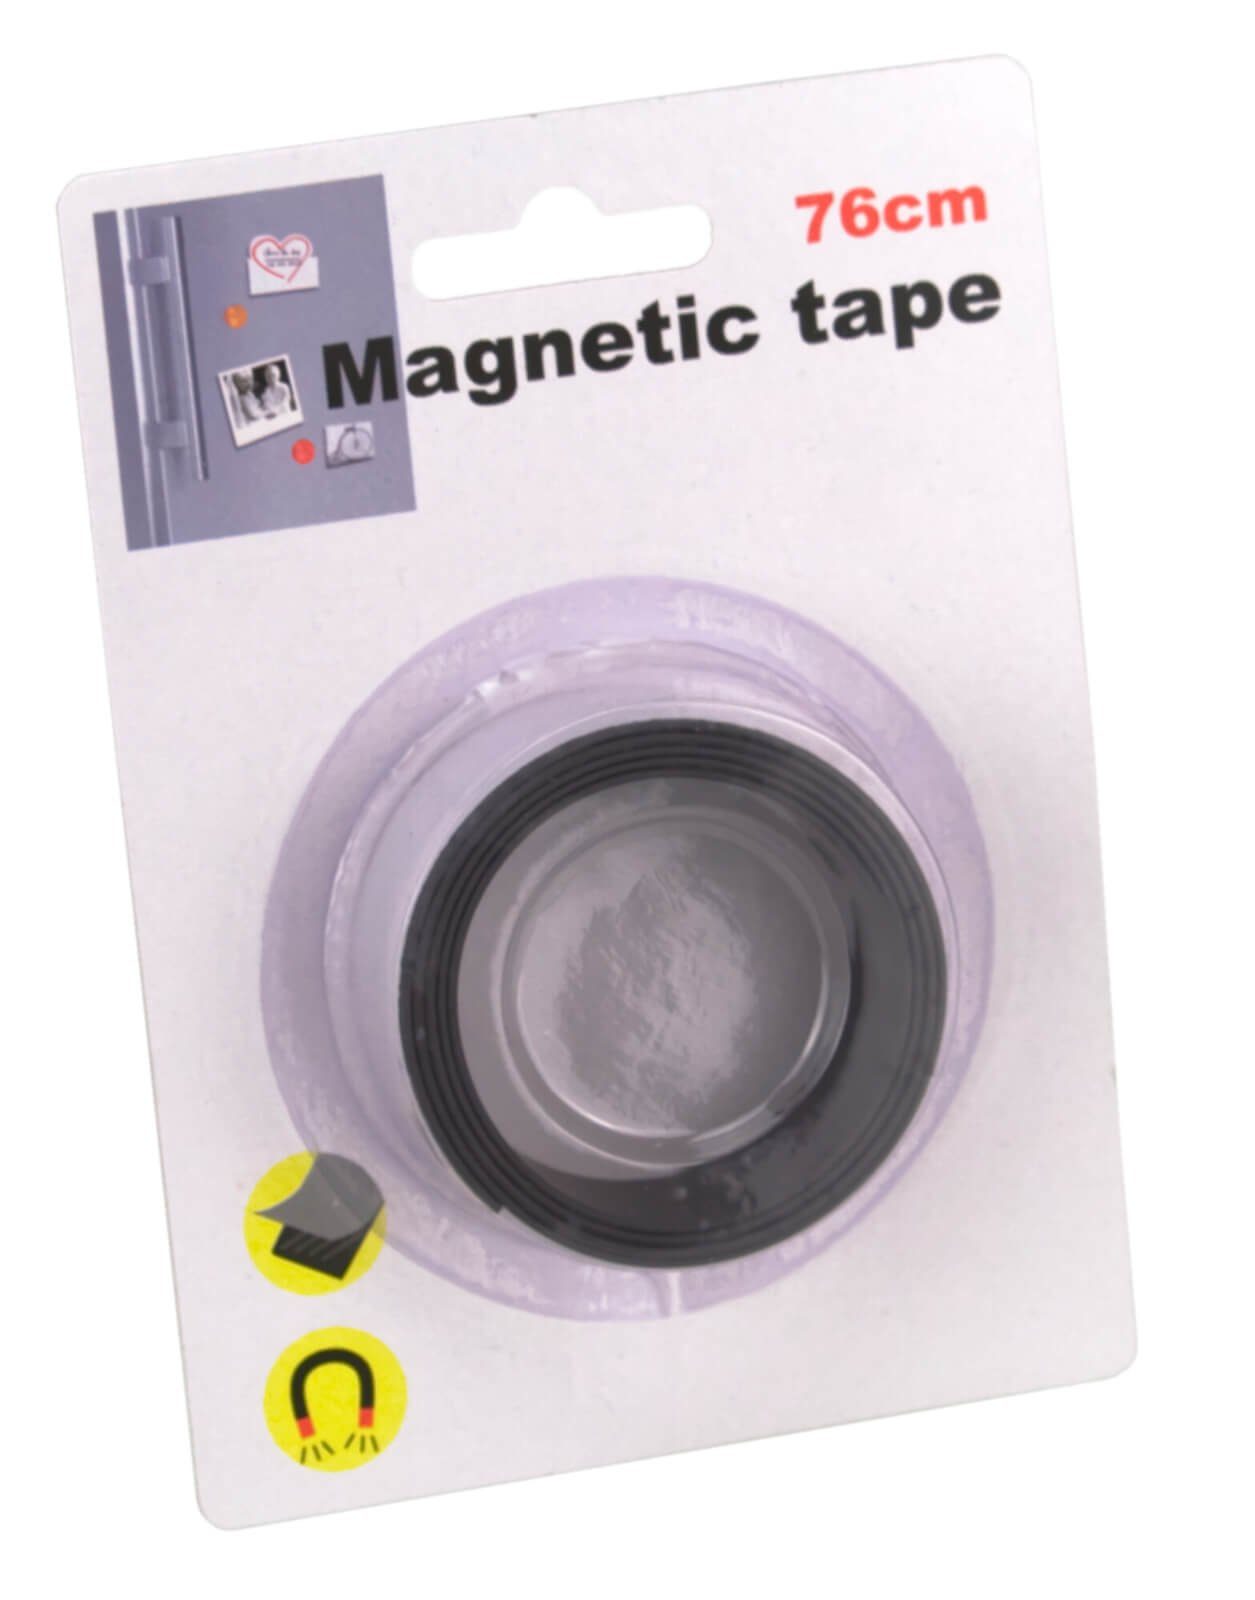 Tape magnetisches Magnetklebeband 76cm Klebeband